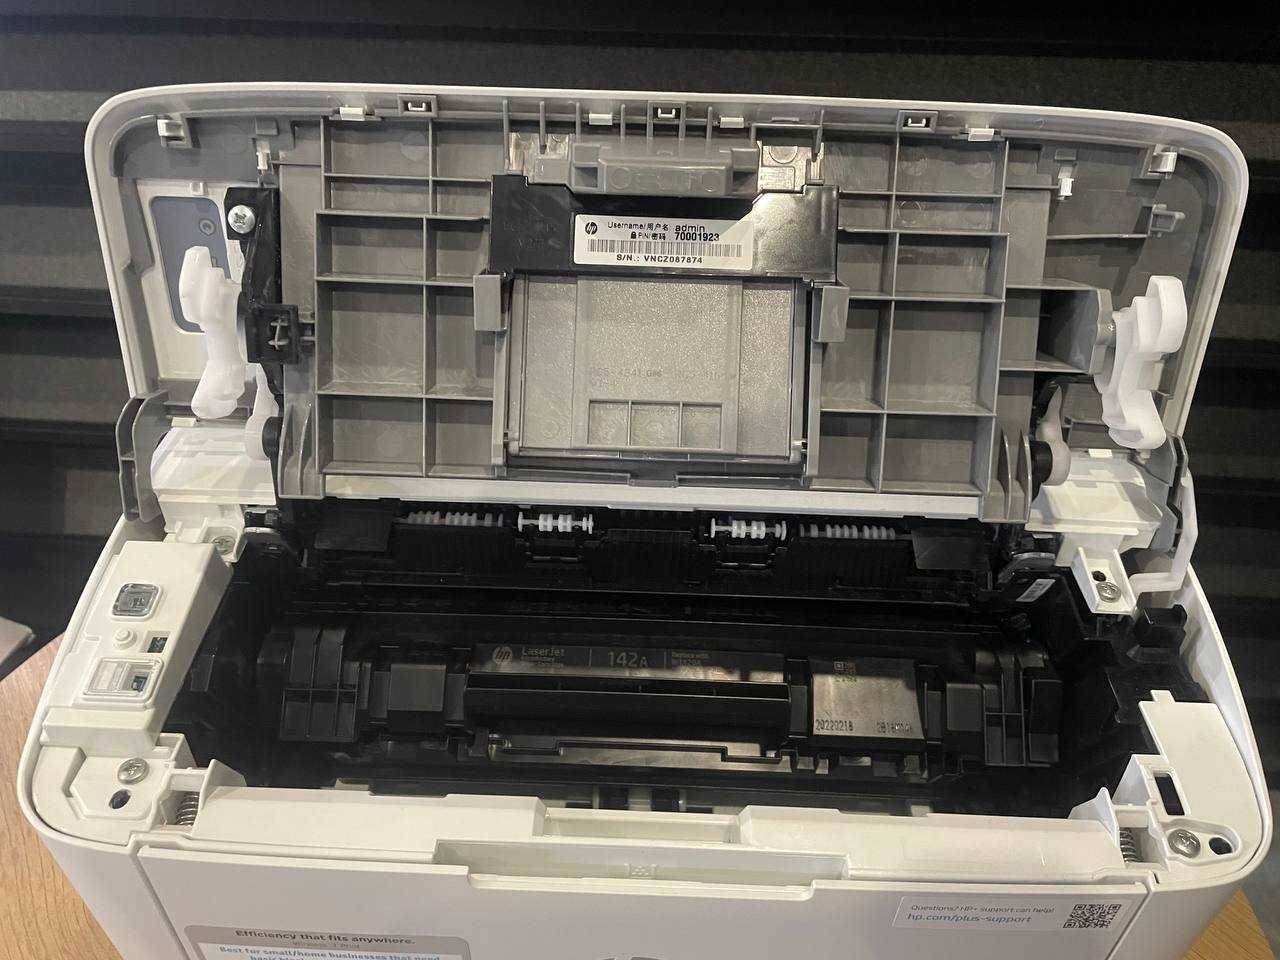 Чорно-білий принтер HP LaserJet M110we Принтер з wi fi